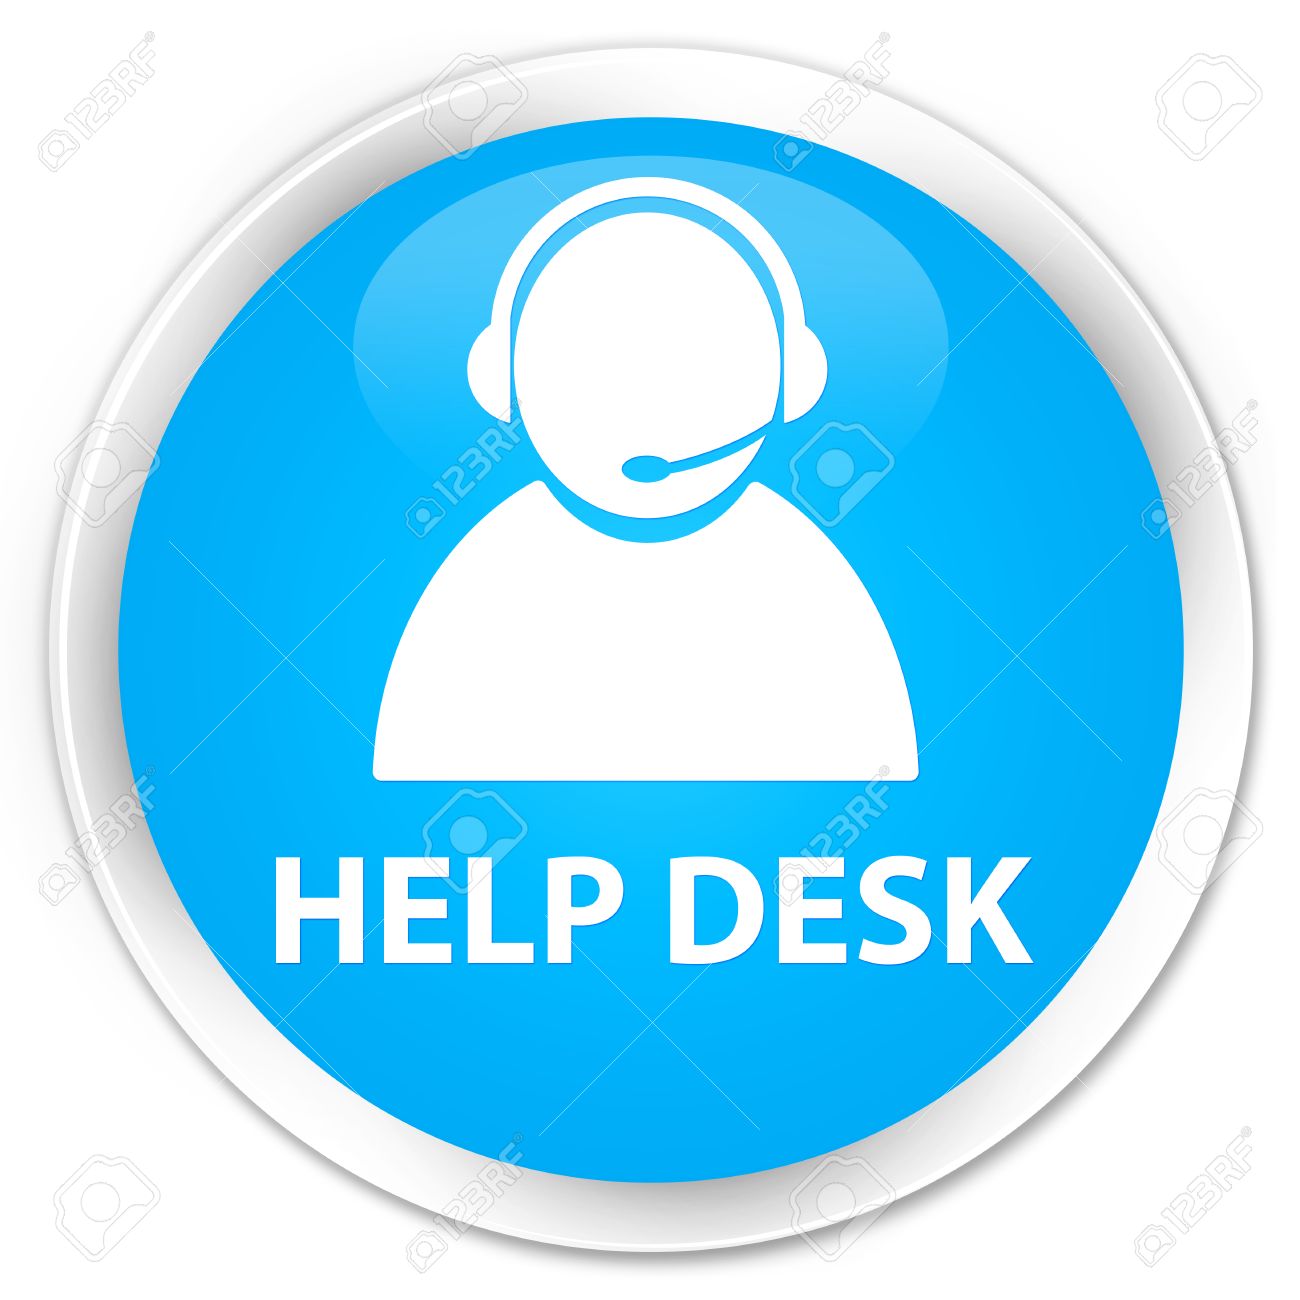 help desk images